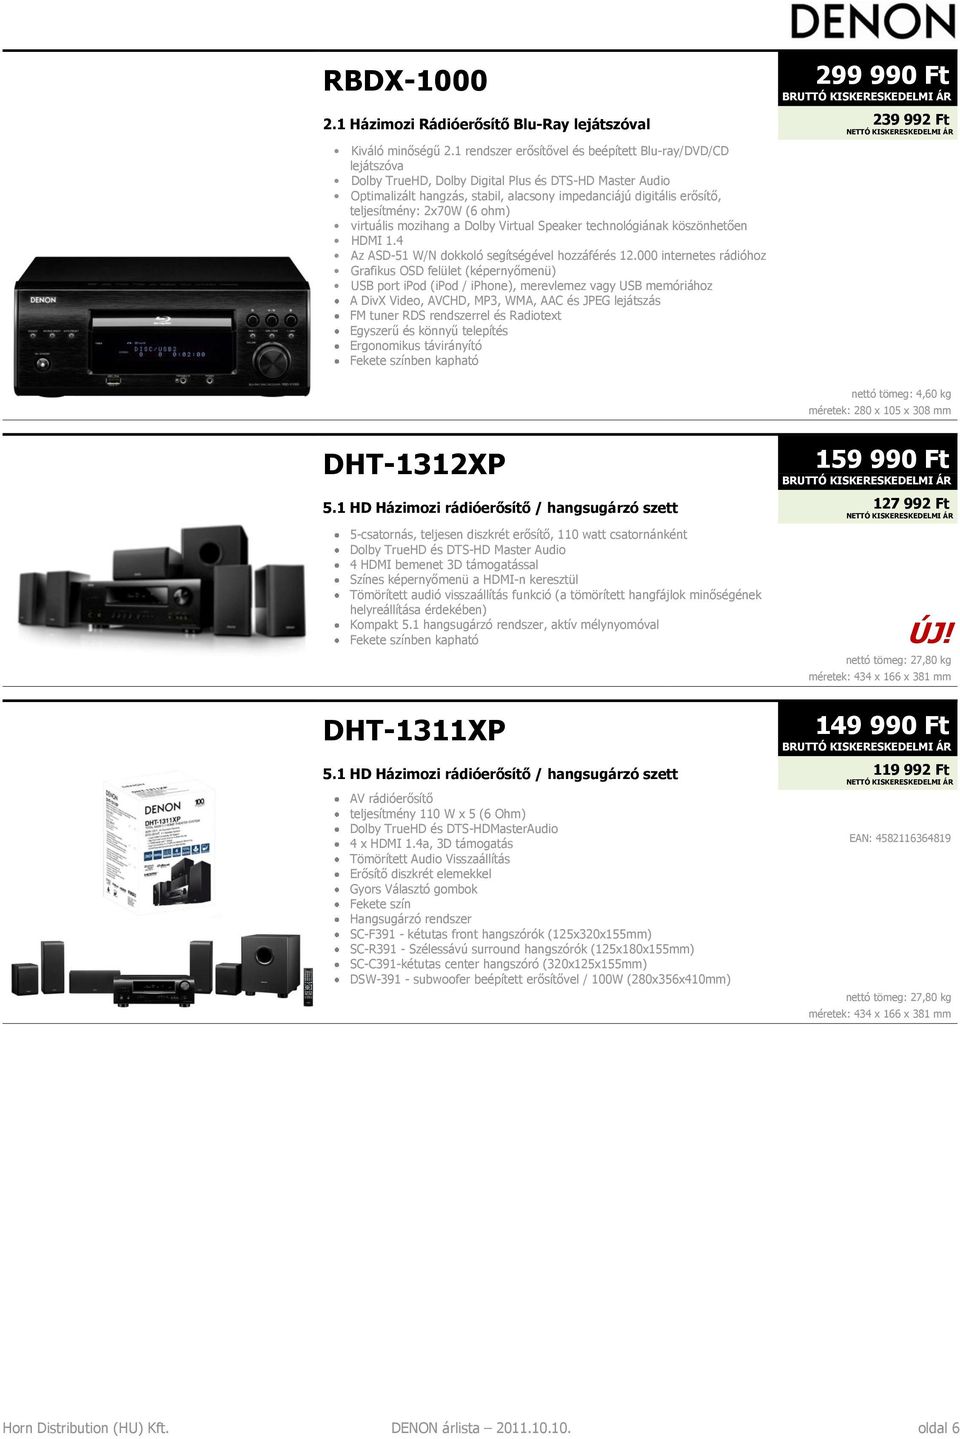 teljesítmény: 2x70W (6 ohm) virtuális mozihang a Dolby Virtual Speaker technológiának köszönhetően HDMI 1.4 Az ASD-51 W/N dokkoló segítségével hozzáférés 12.